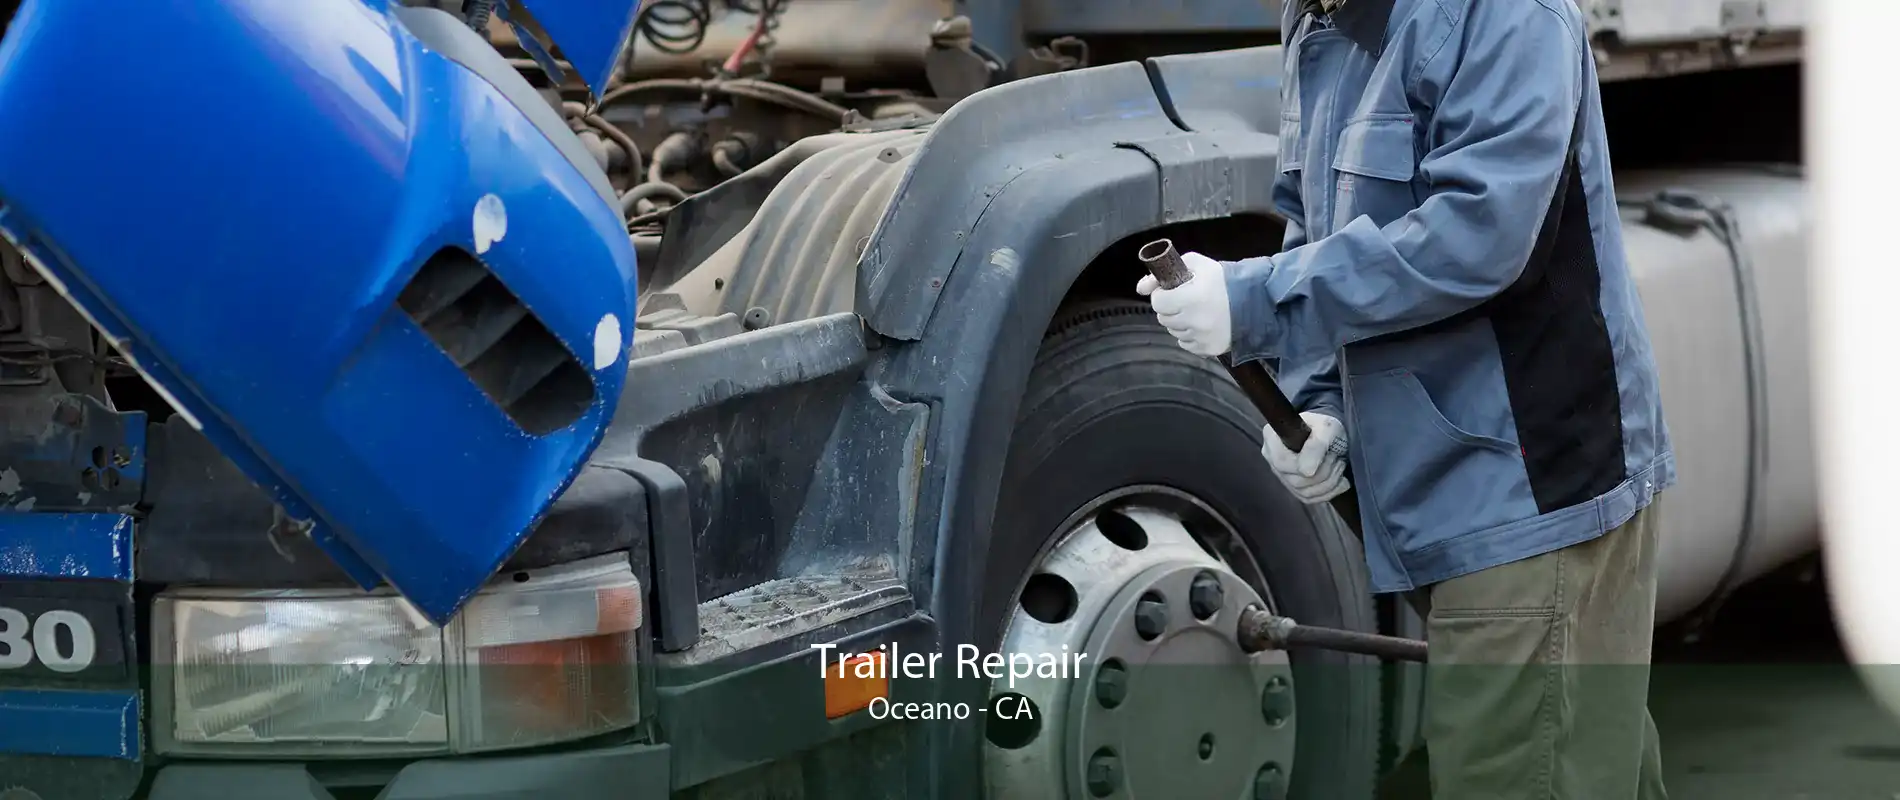 Trailer Repair Oceano - CA